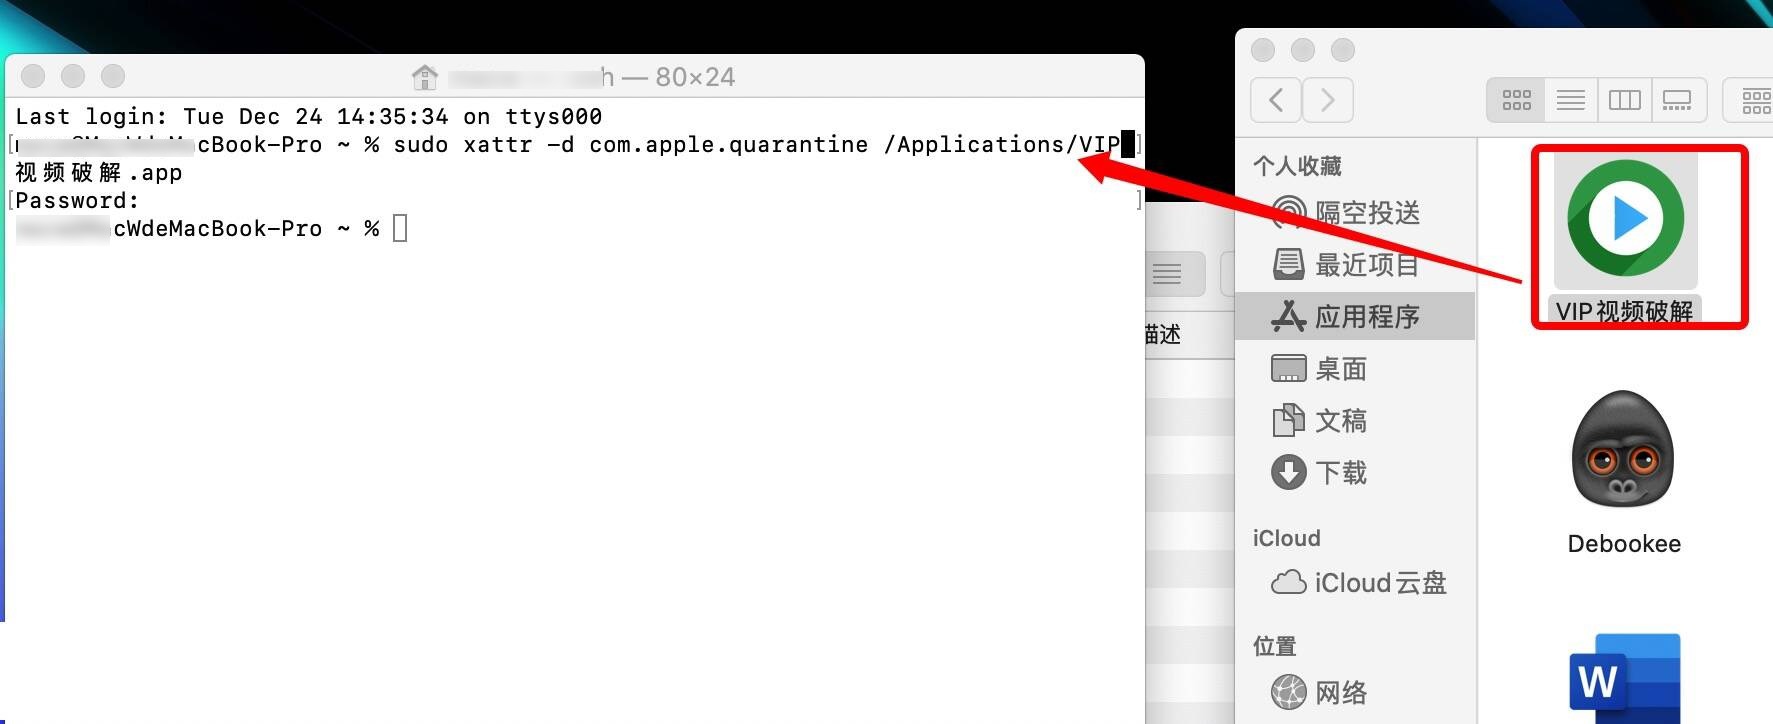 Mac应用程序无法打开提示不明开发者或文件损坏的处理方法下载